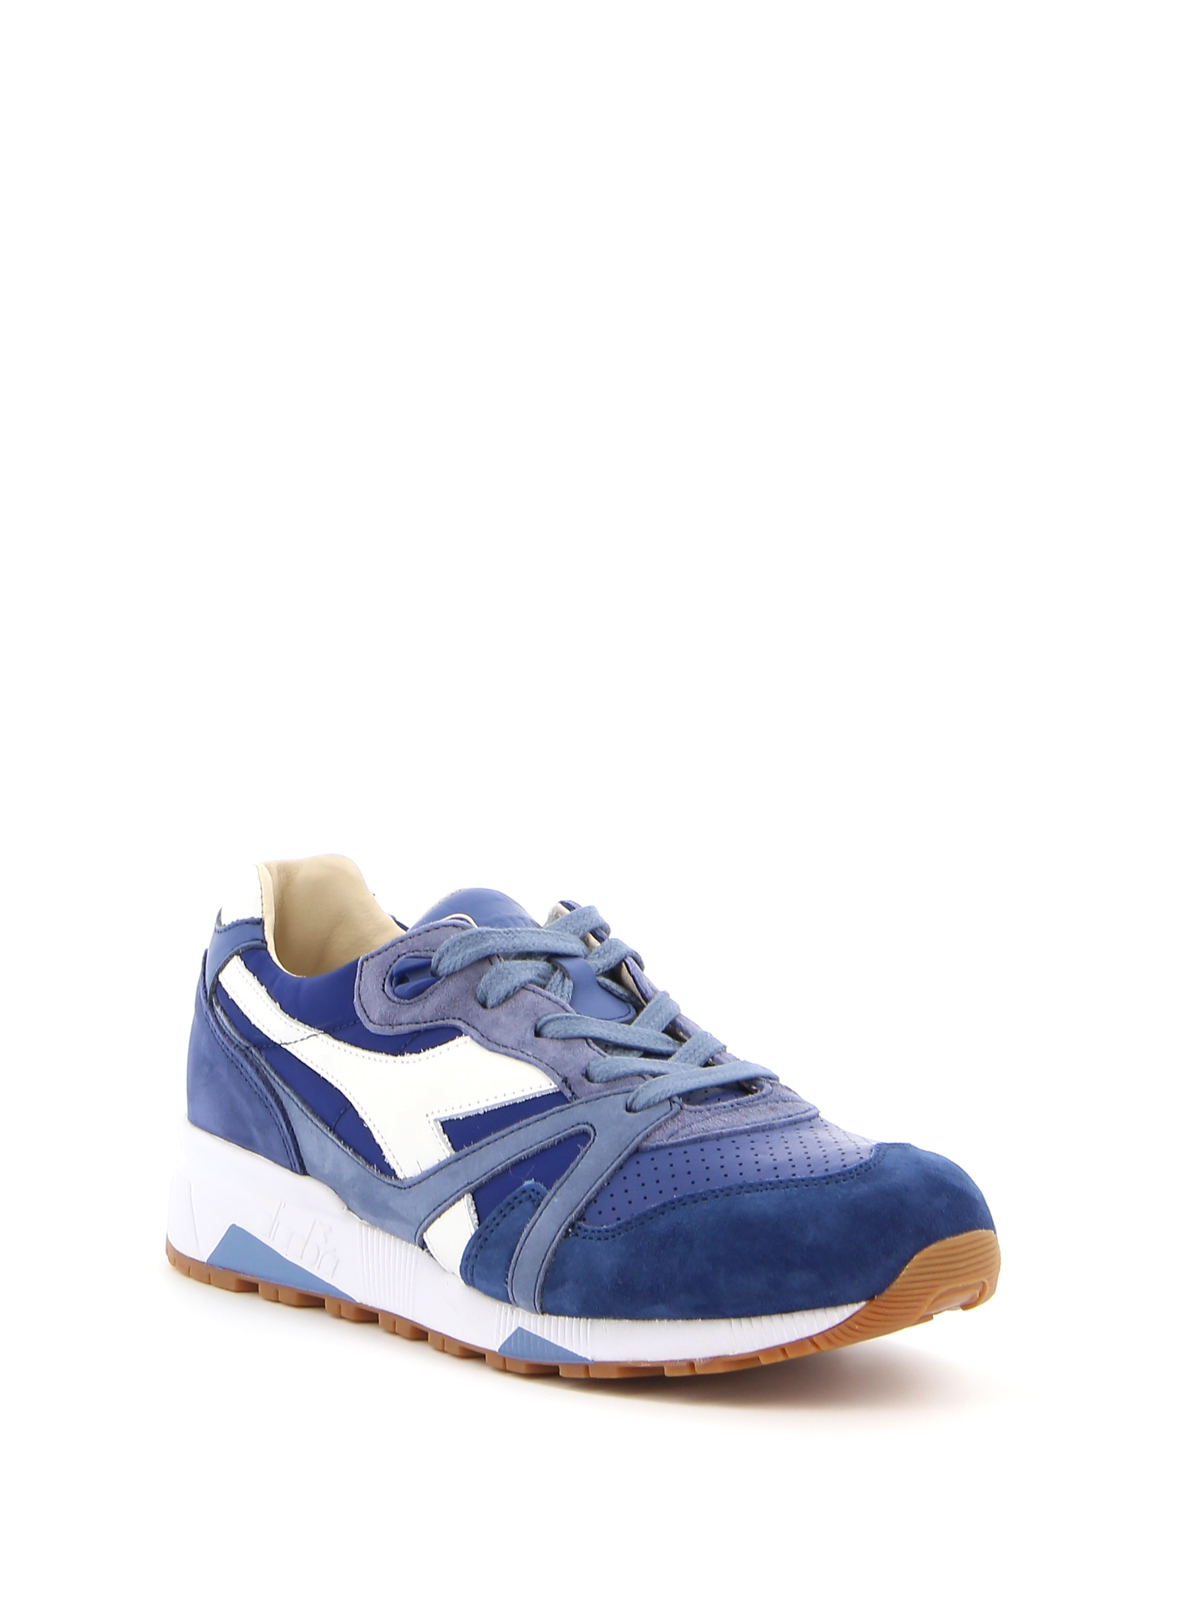 hoek Tegen plek Trainers Diadora Heritage - N9000 H ITA blue sneakers - 201172782016002E+15